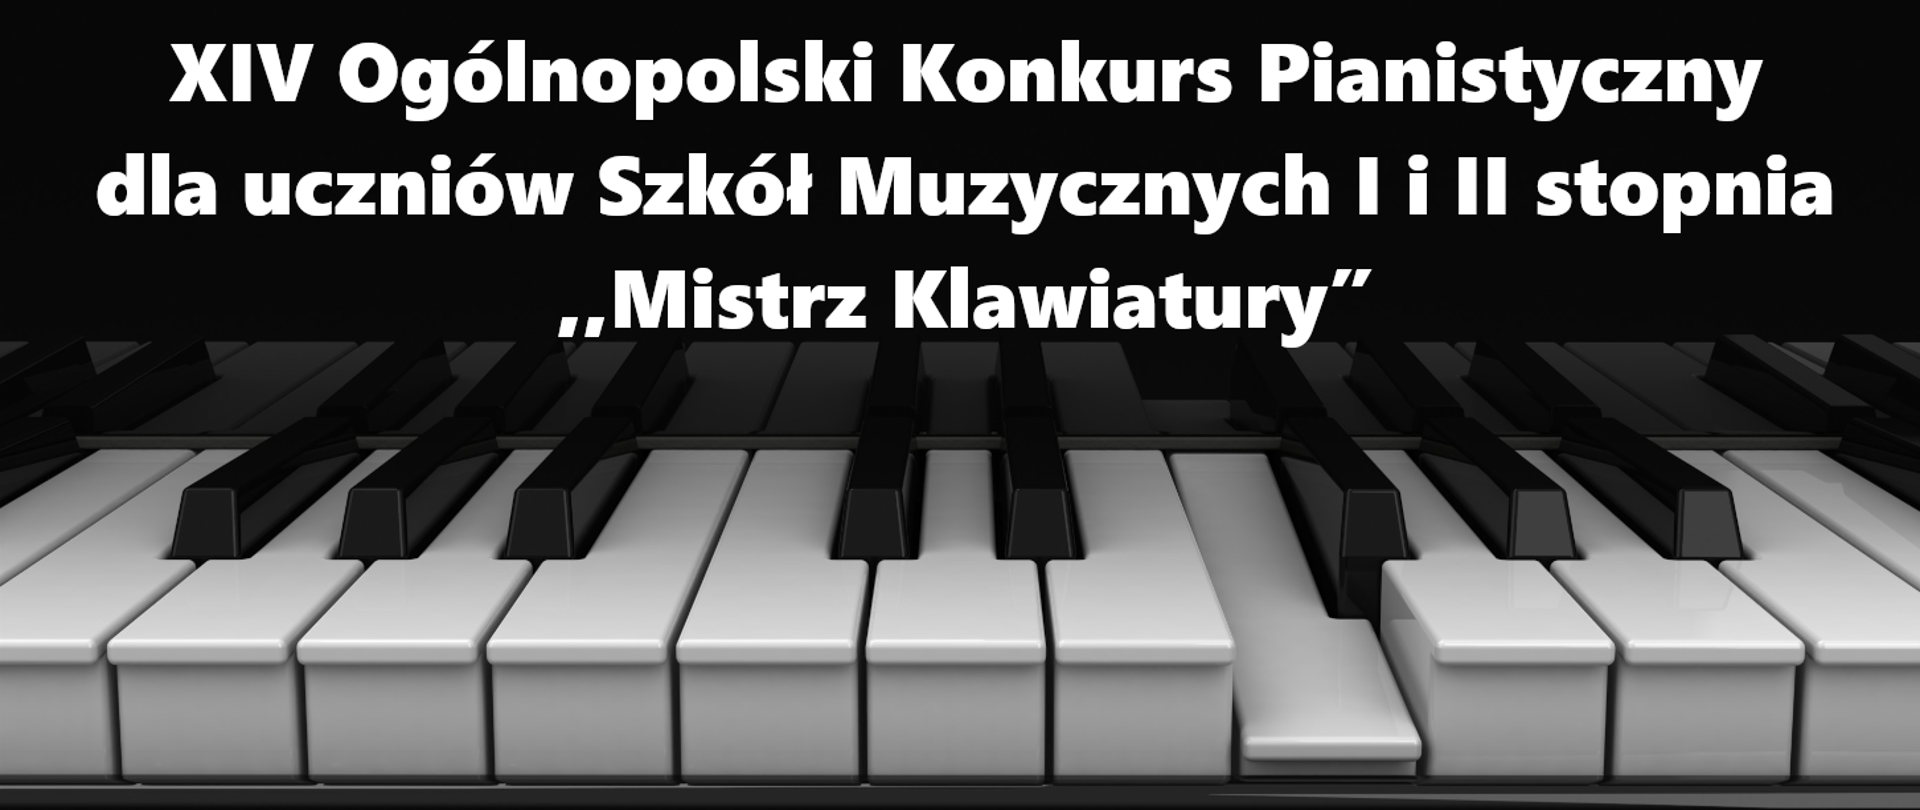 Obraz przedstawia w dolnej części klawiaturę fortepianu, a powyżej napis: " Czternasty Ogólnopolski Konkurs Pianistyczny dla uczniów Szkół Muzycznych I i II stopnia ,,Mistrz Klawiatury”".